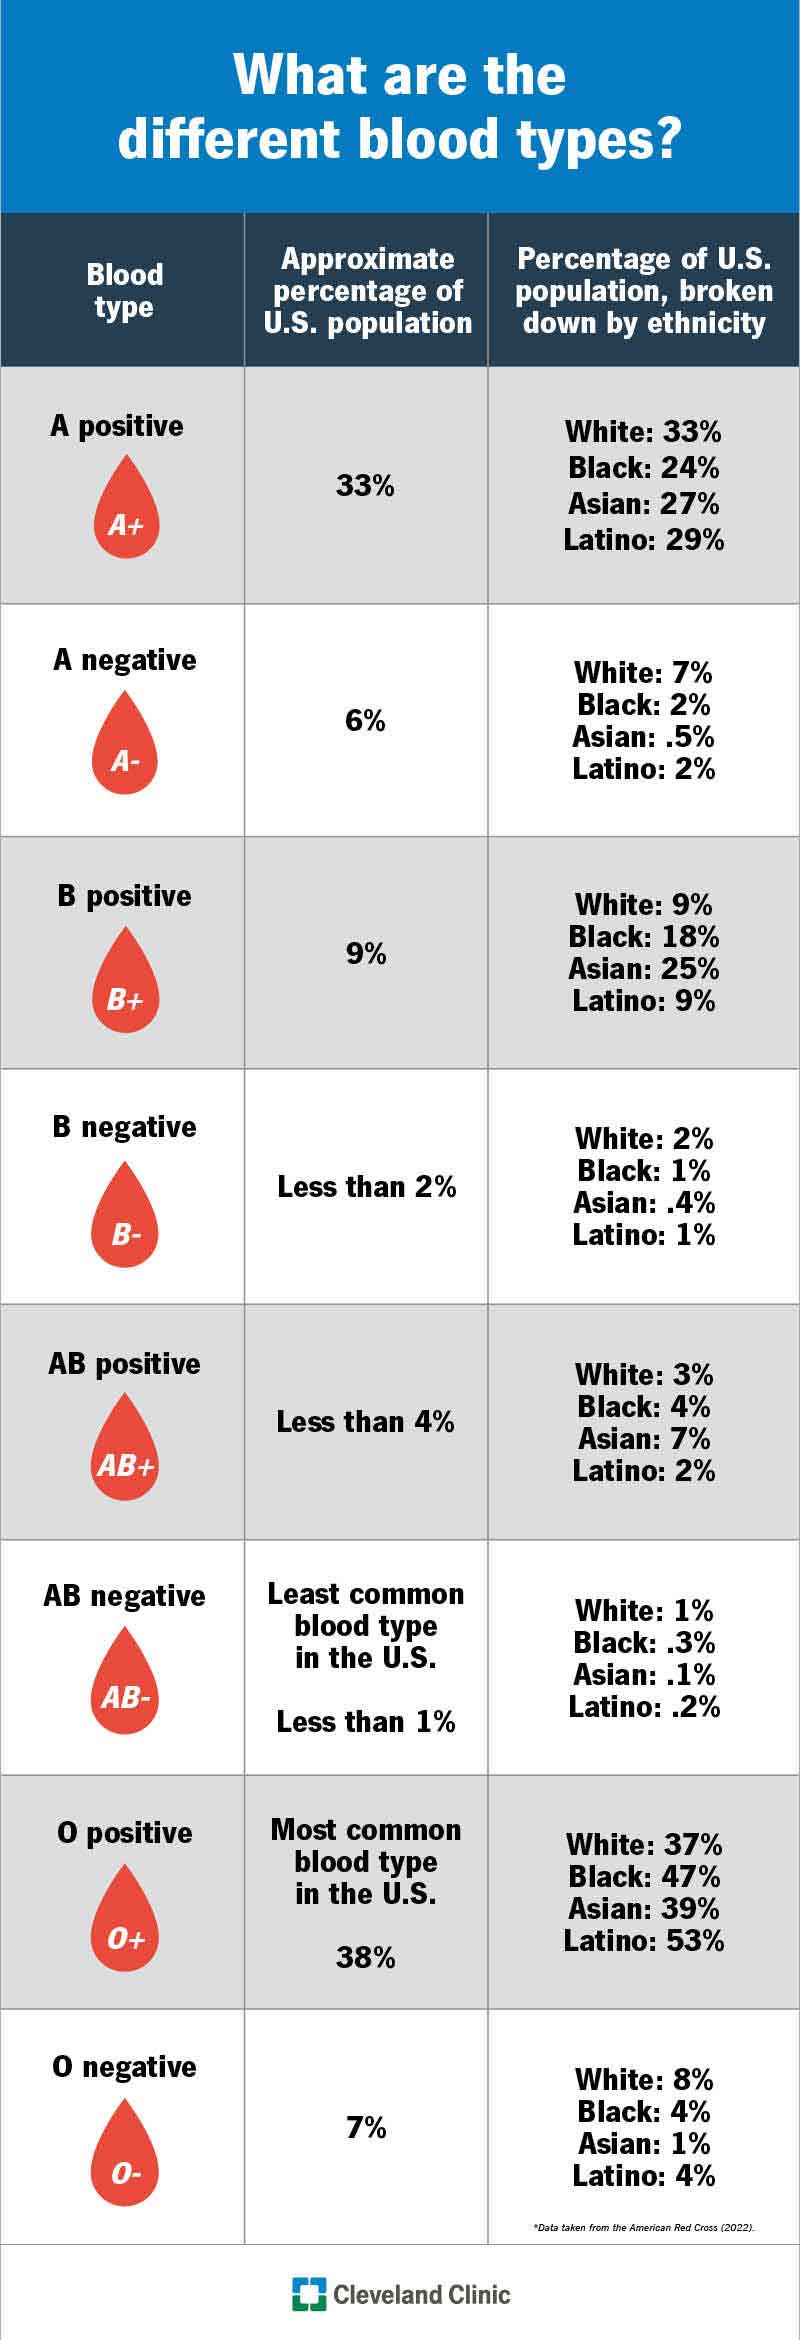 O+ è il gruppo sanguigno più comune negli Stati Uniti, seguito da A+ e B+.